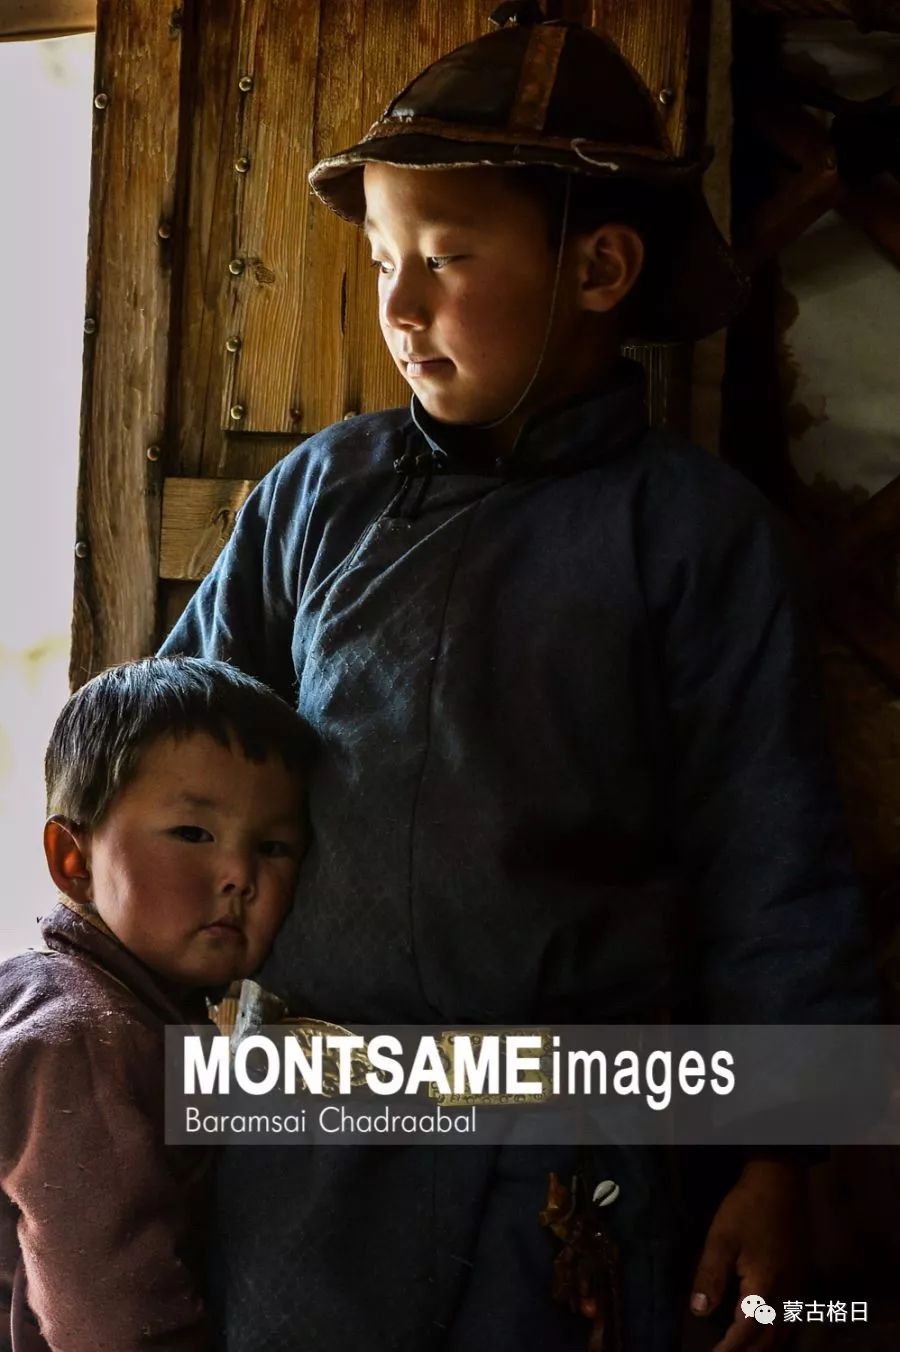 蒙古国举办“今日蒙古”多国摄影作品展 第15张